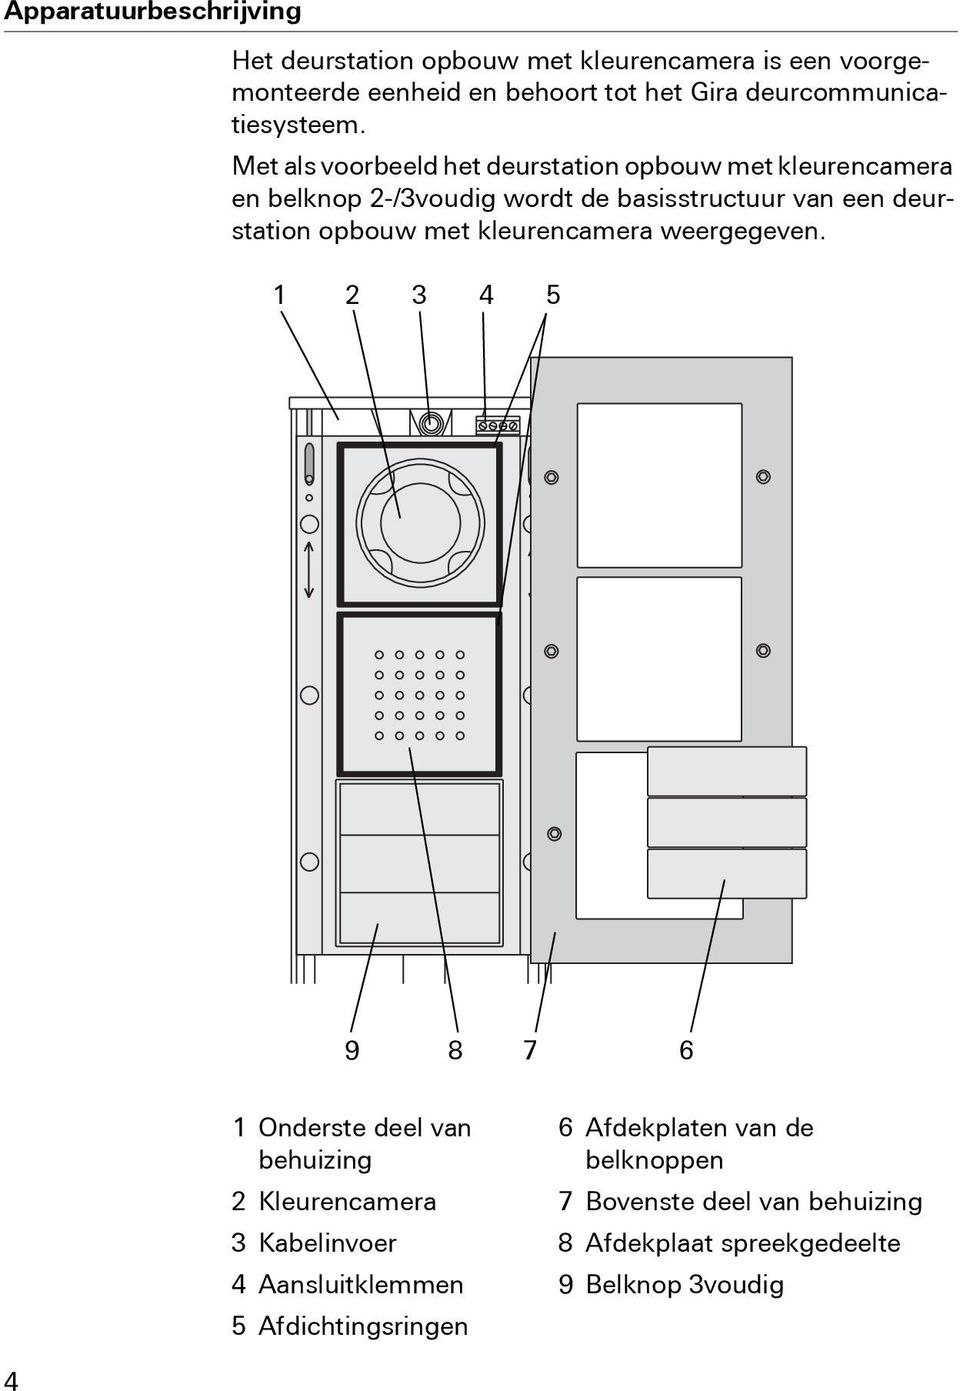 Met als voorbeeld het deurstation opbouw met kleurencamera en belknop 2-/3voudig wordt de basisstructuur van een deurstation opbouw